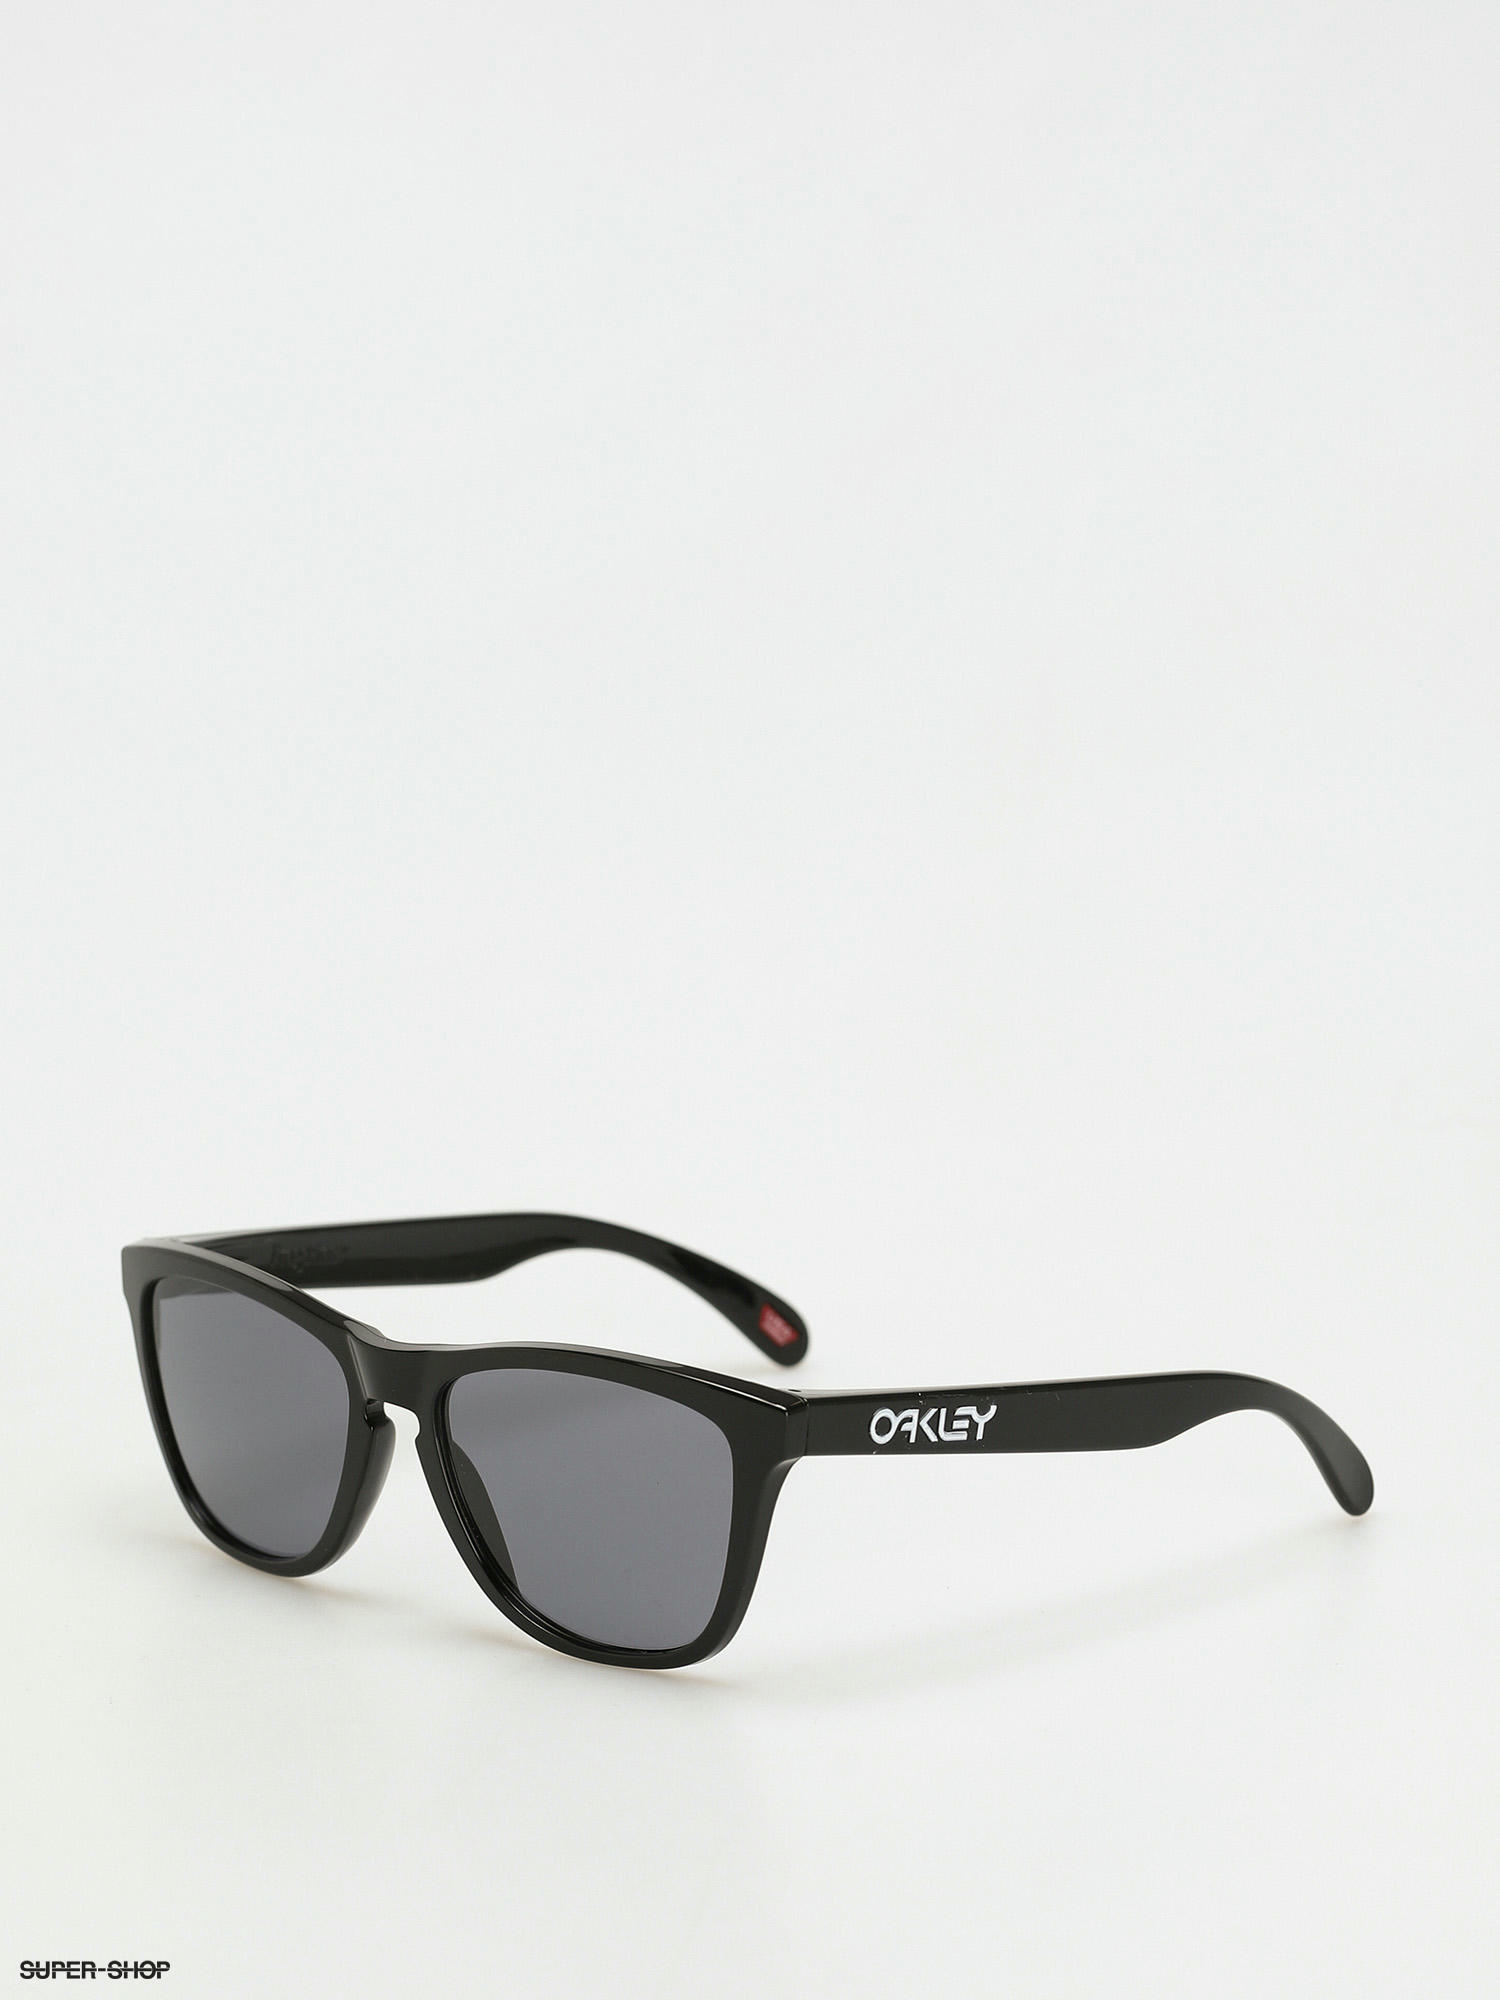 Oakley Frogskins Sunglasses (polished black/grey)